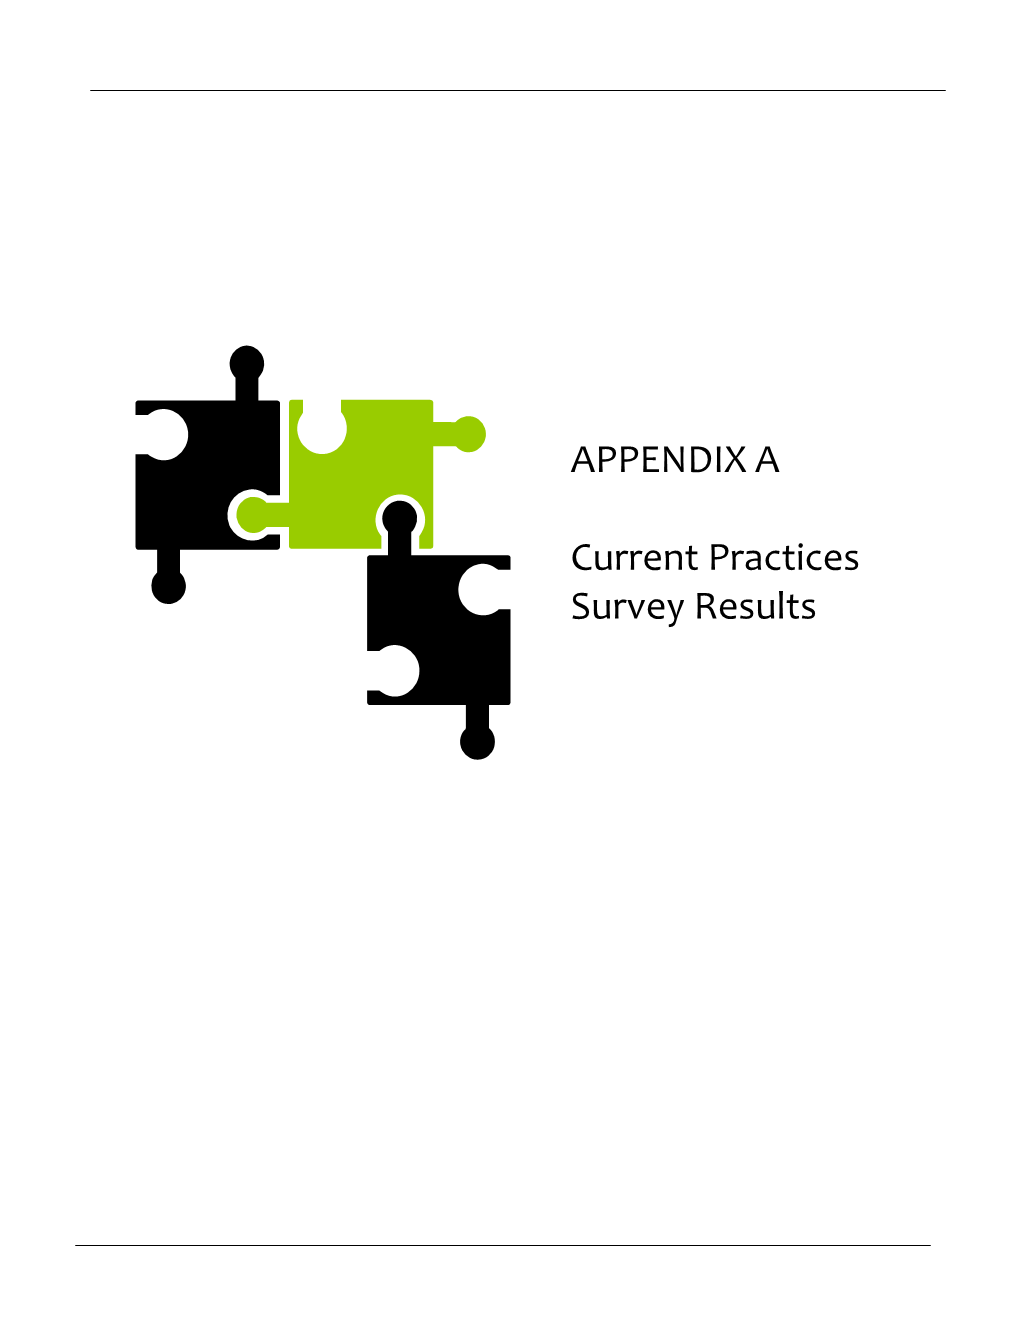 APPENDIX a Current Practices Survey Results